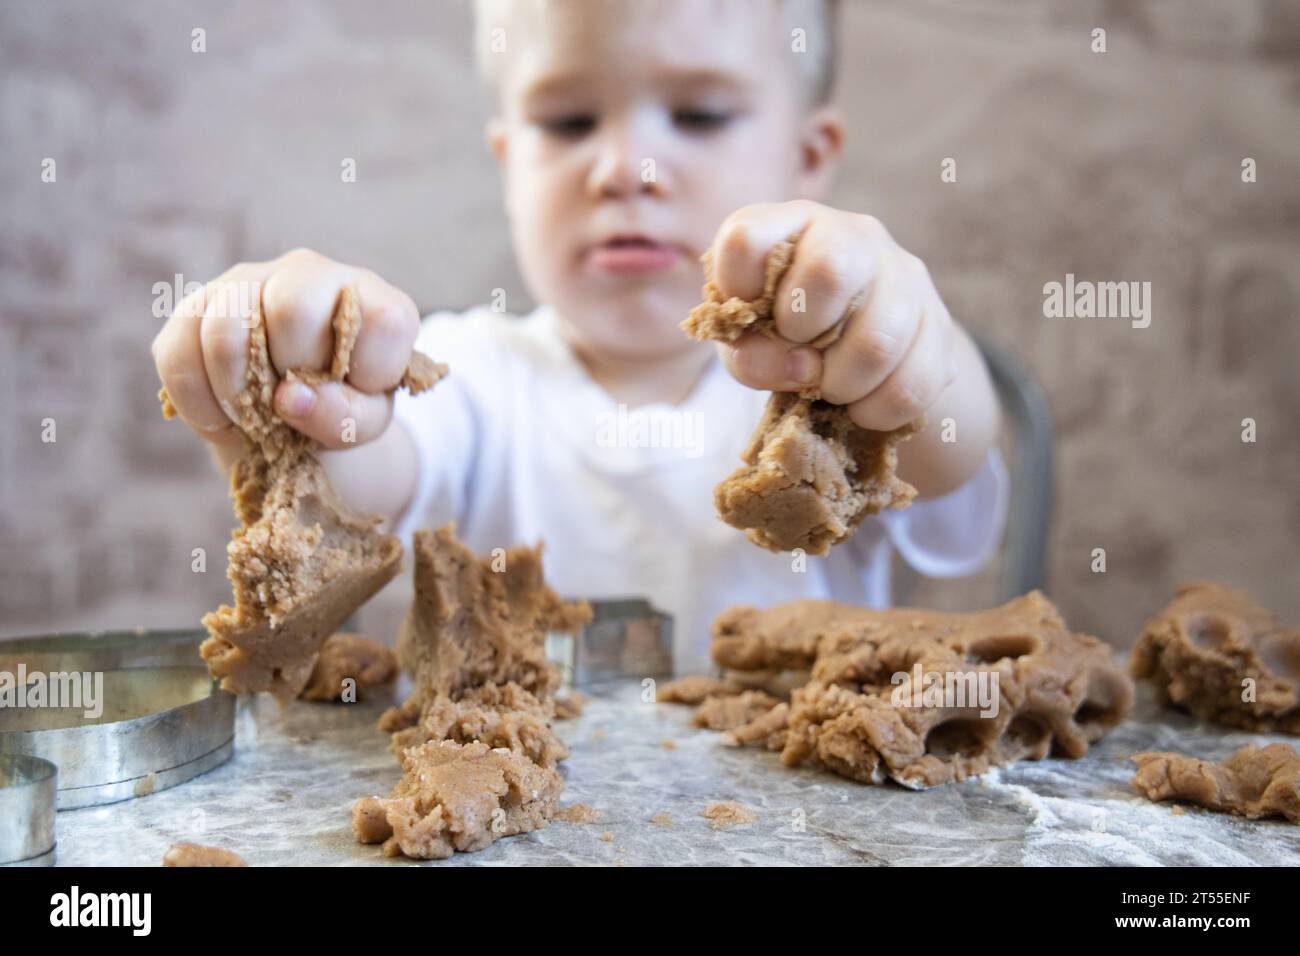 Le petit garçon pétrit la pâte pour les biscuits au gingembre Banque D'Images